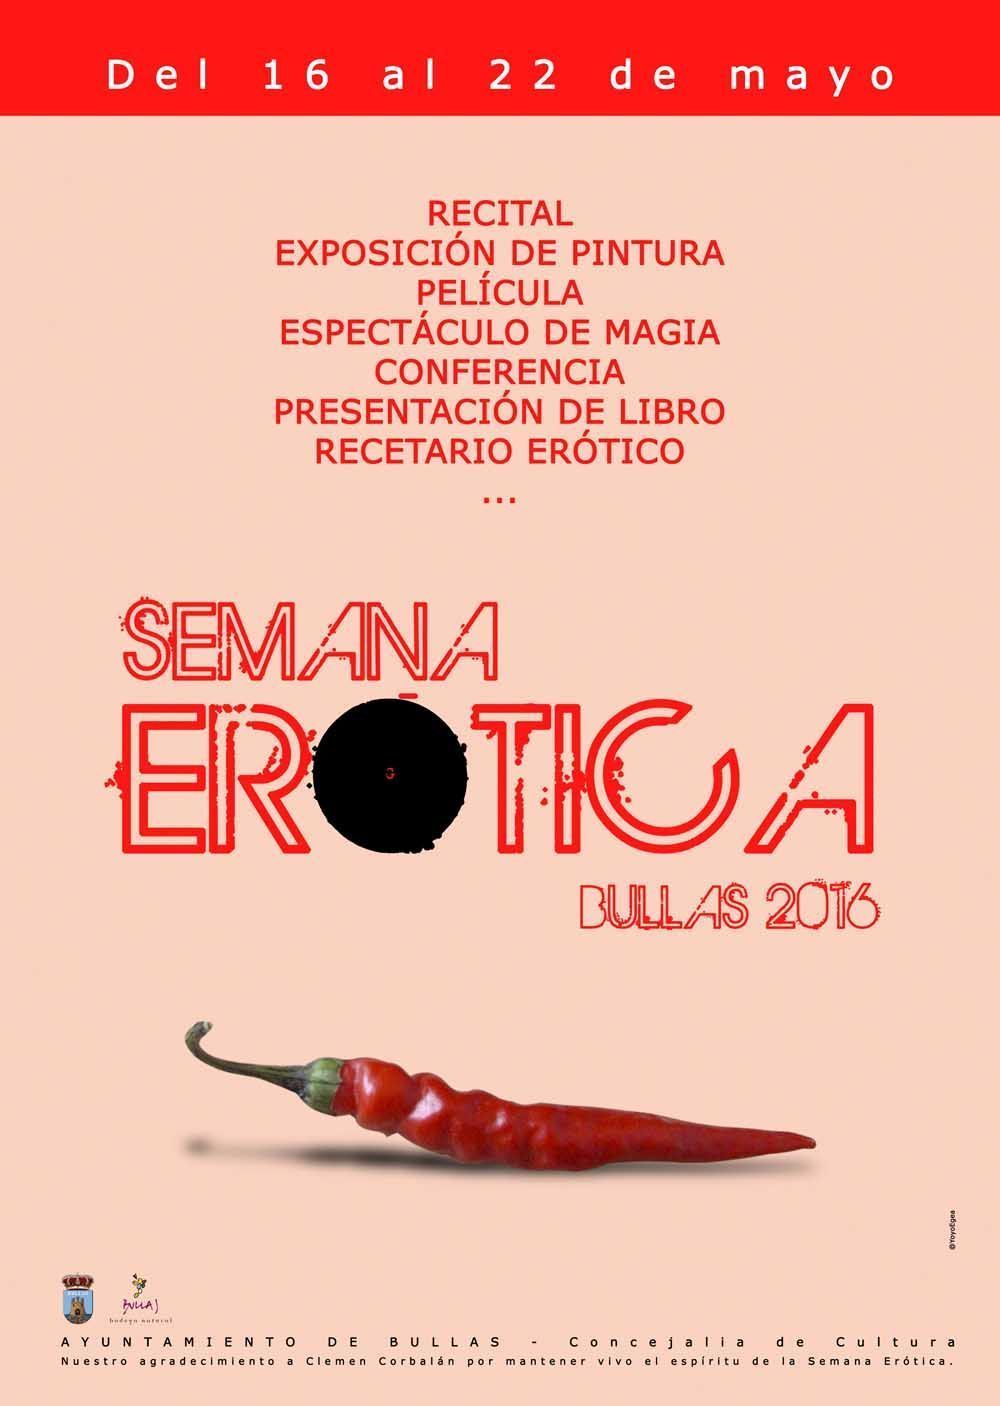 La Semana Erótica combina arte, cine y espectáculo de magia con el clásico concurso de pintura y recital erótico